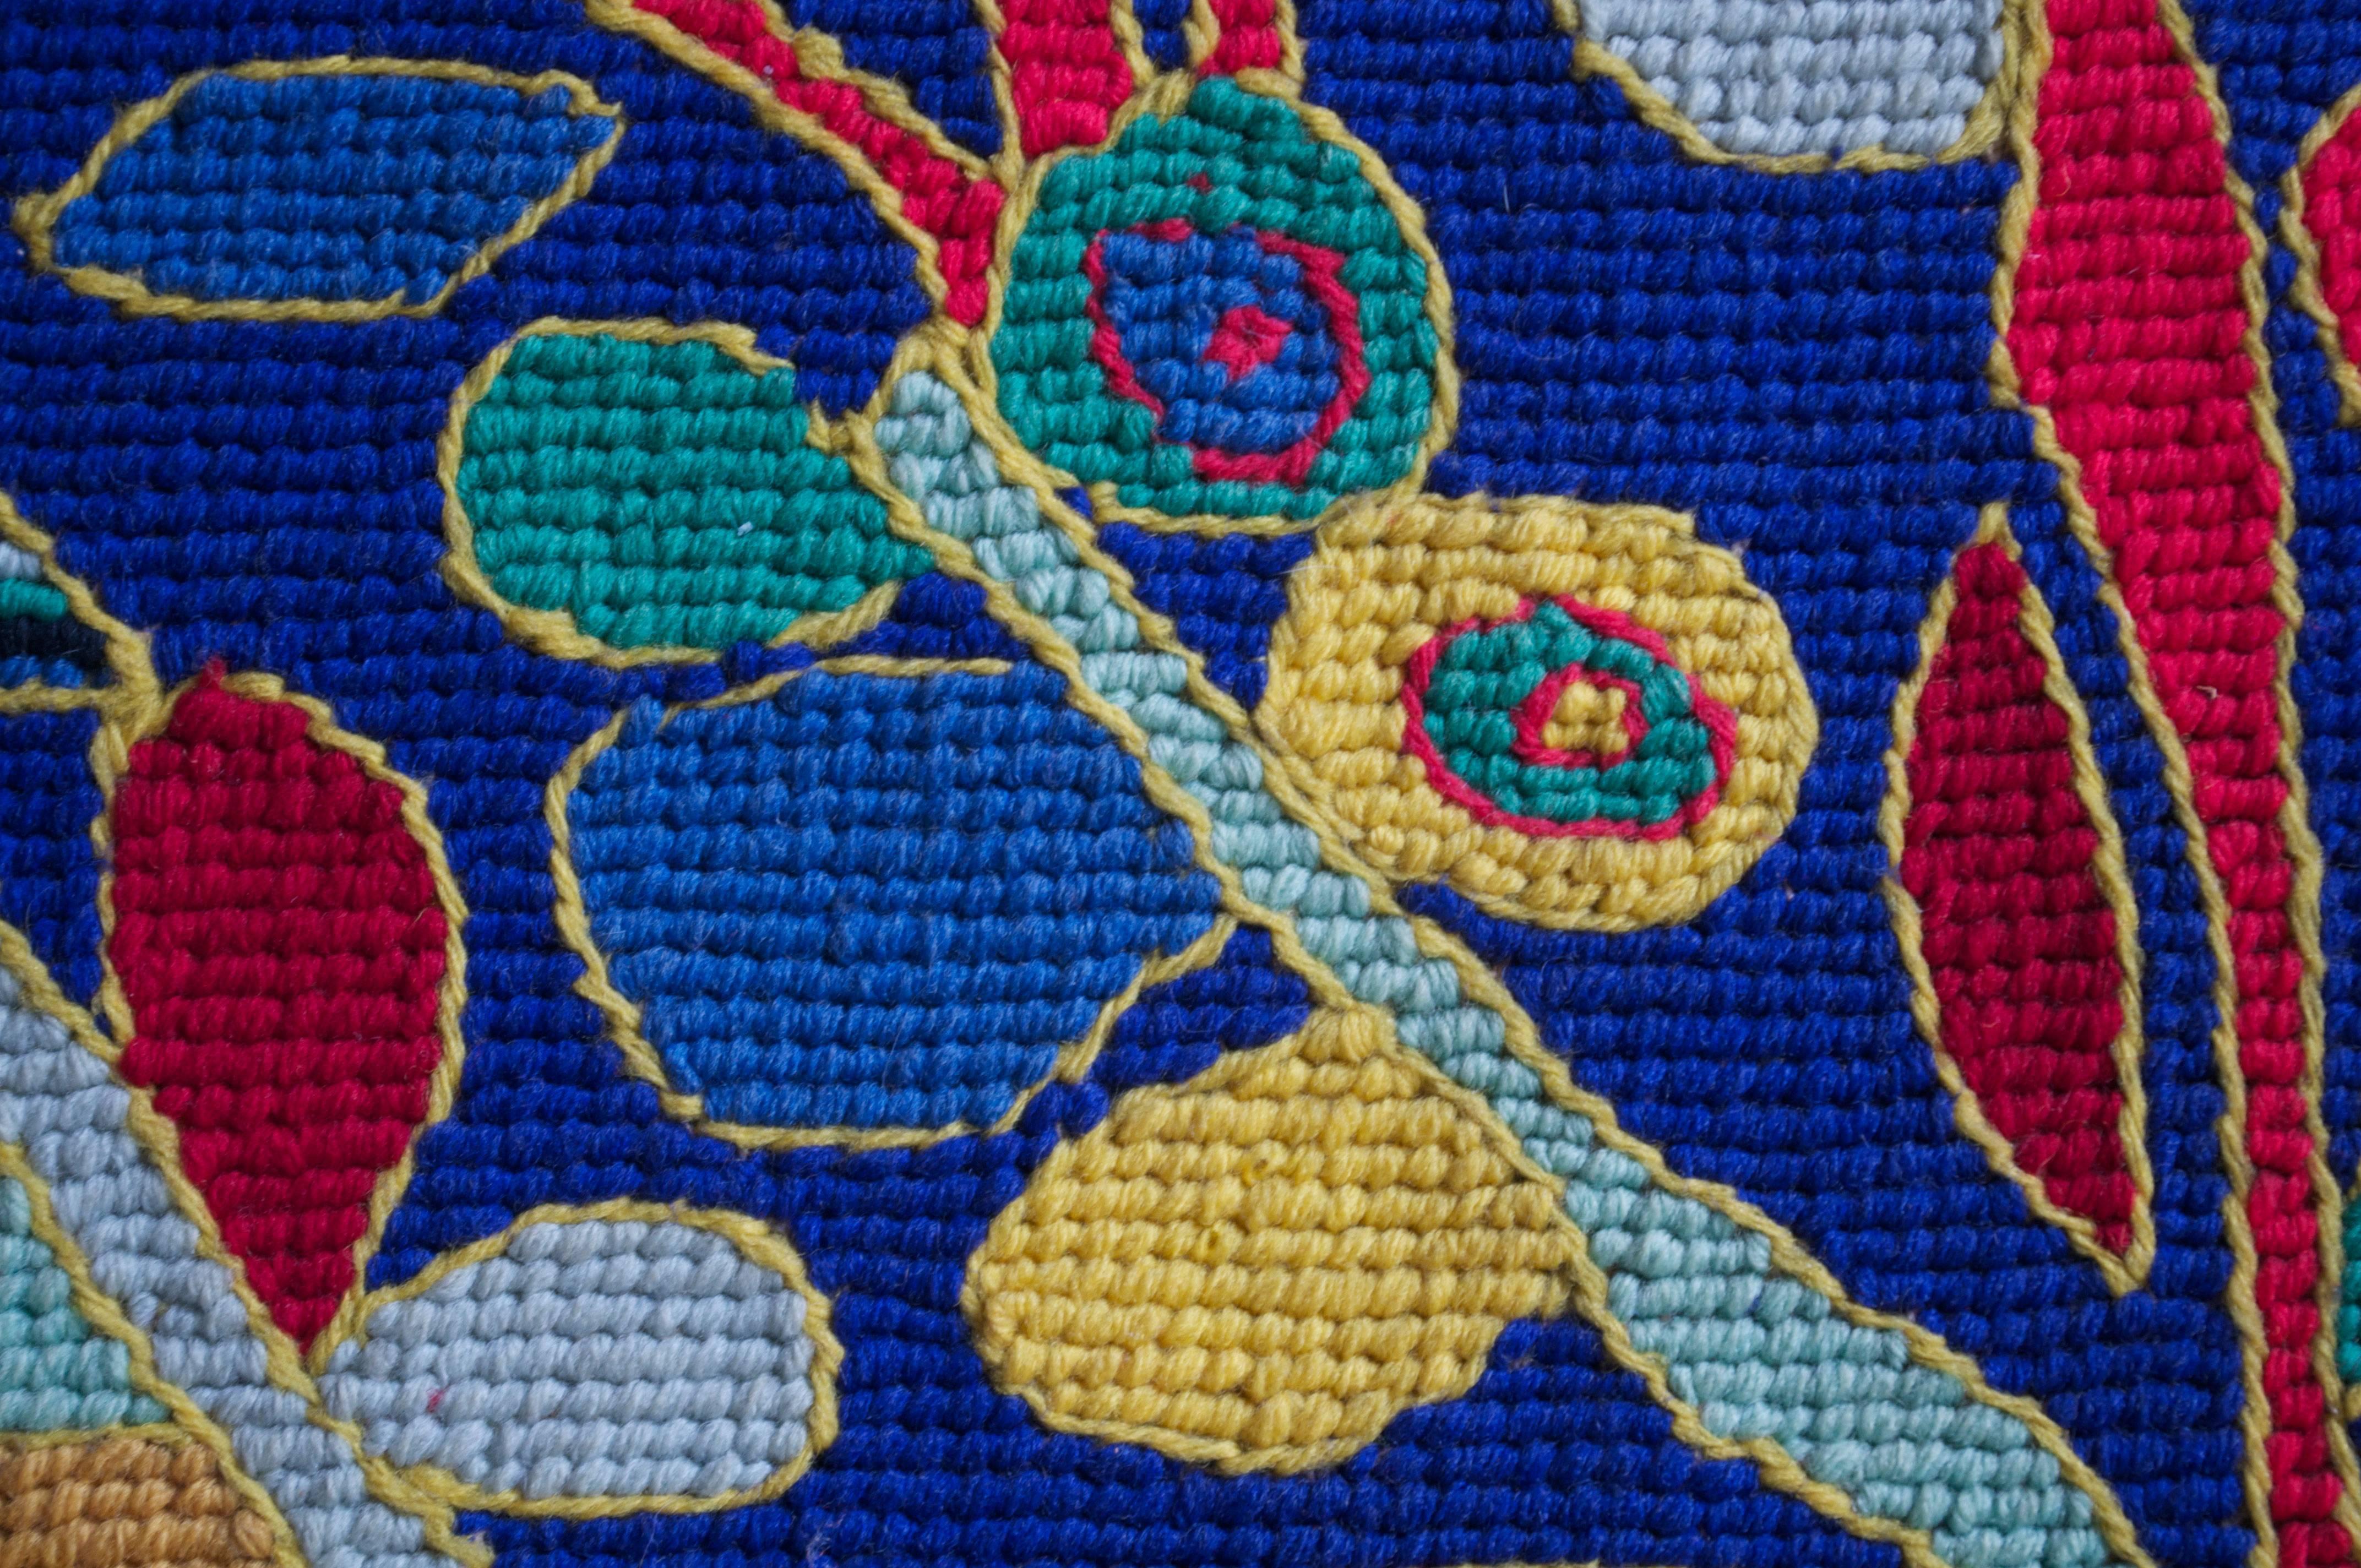 Brazilian Wool Tapestry by Genaro de Carvalho